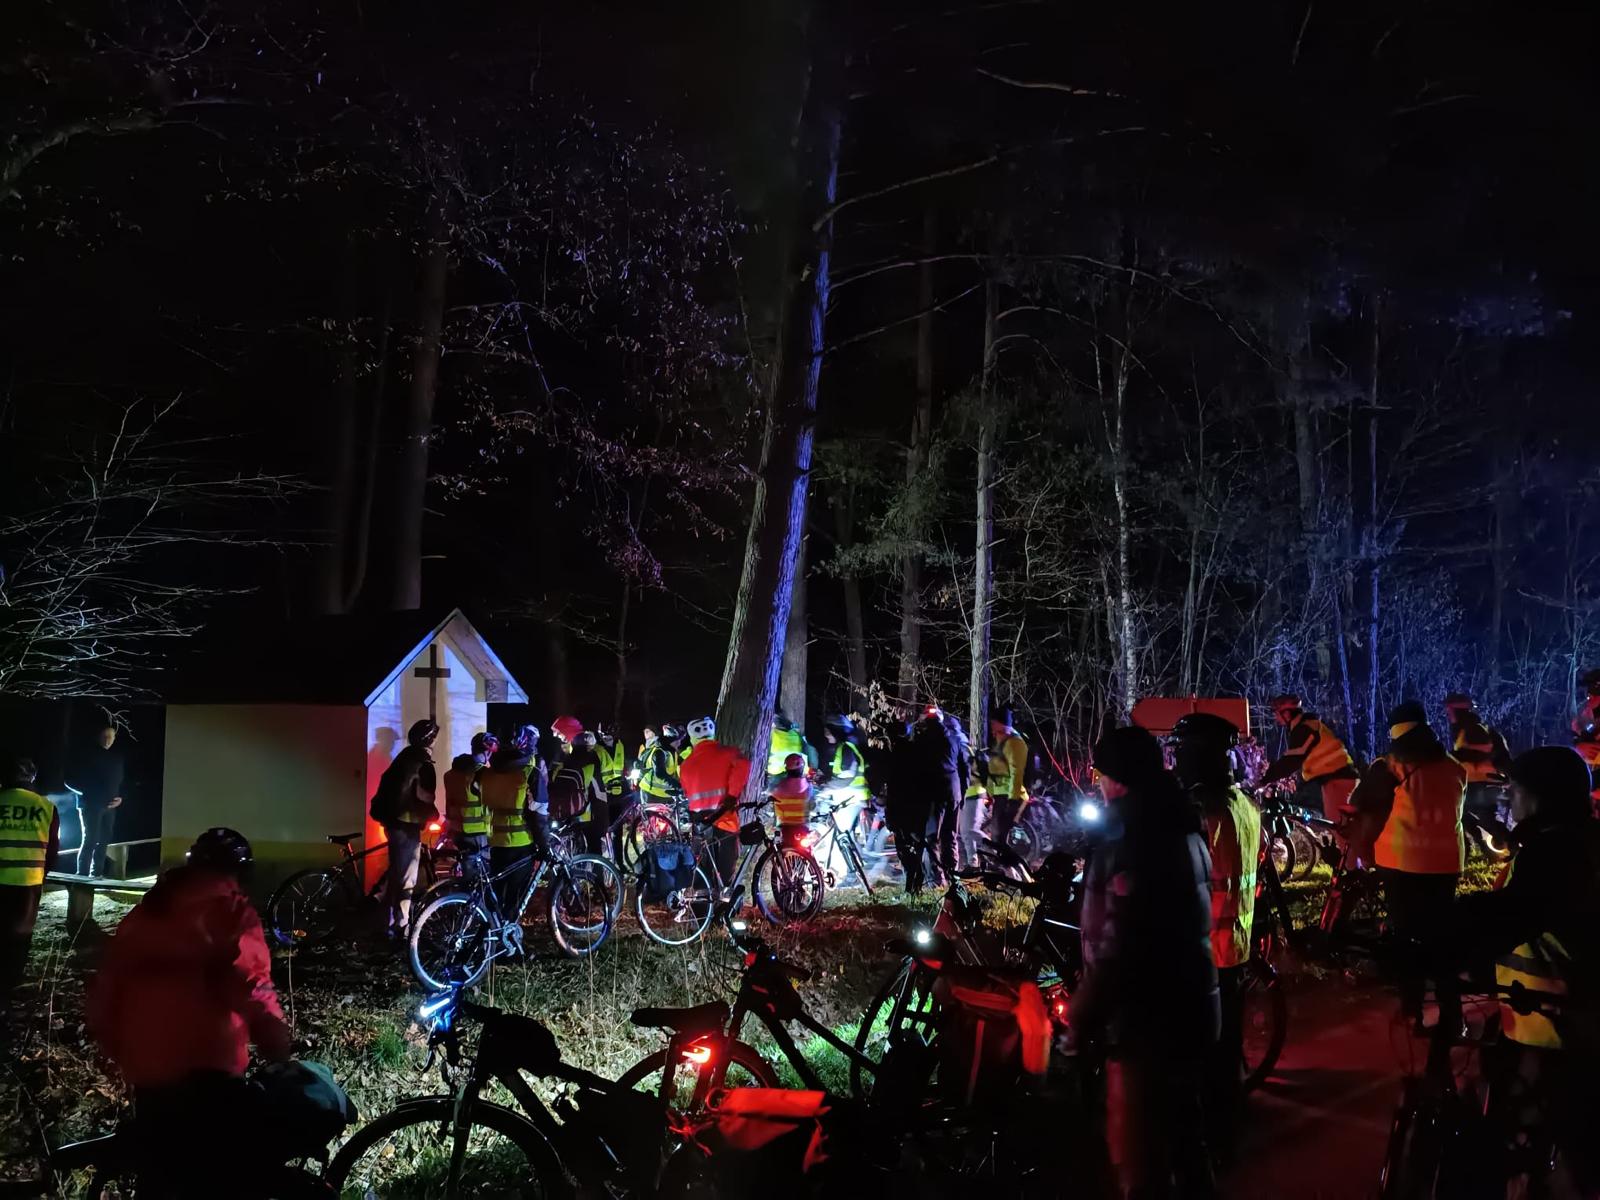 Rowerowa Droga Krzyżowa | Bardzo duża grupa kolarzy stoi w lesie obok murowanej, małej kapliczki. Zdjęcie nocne.jpg